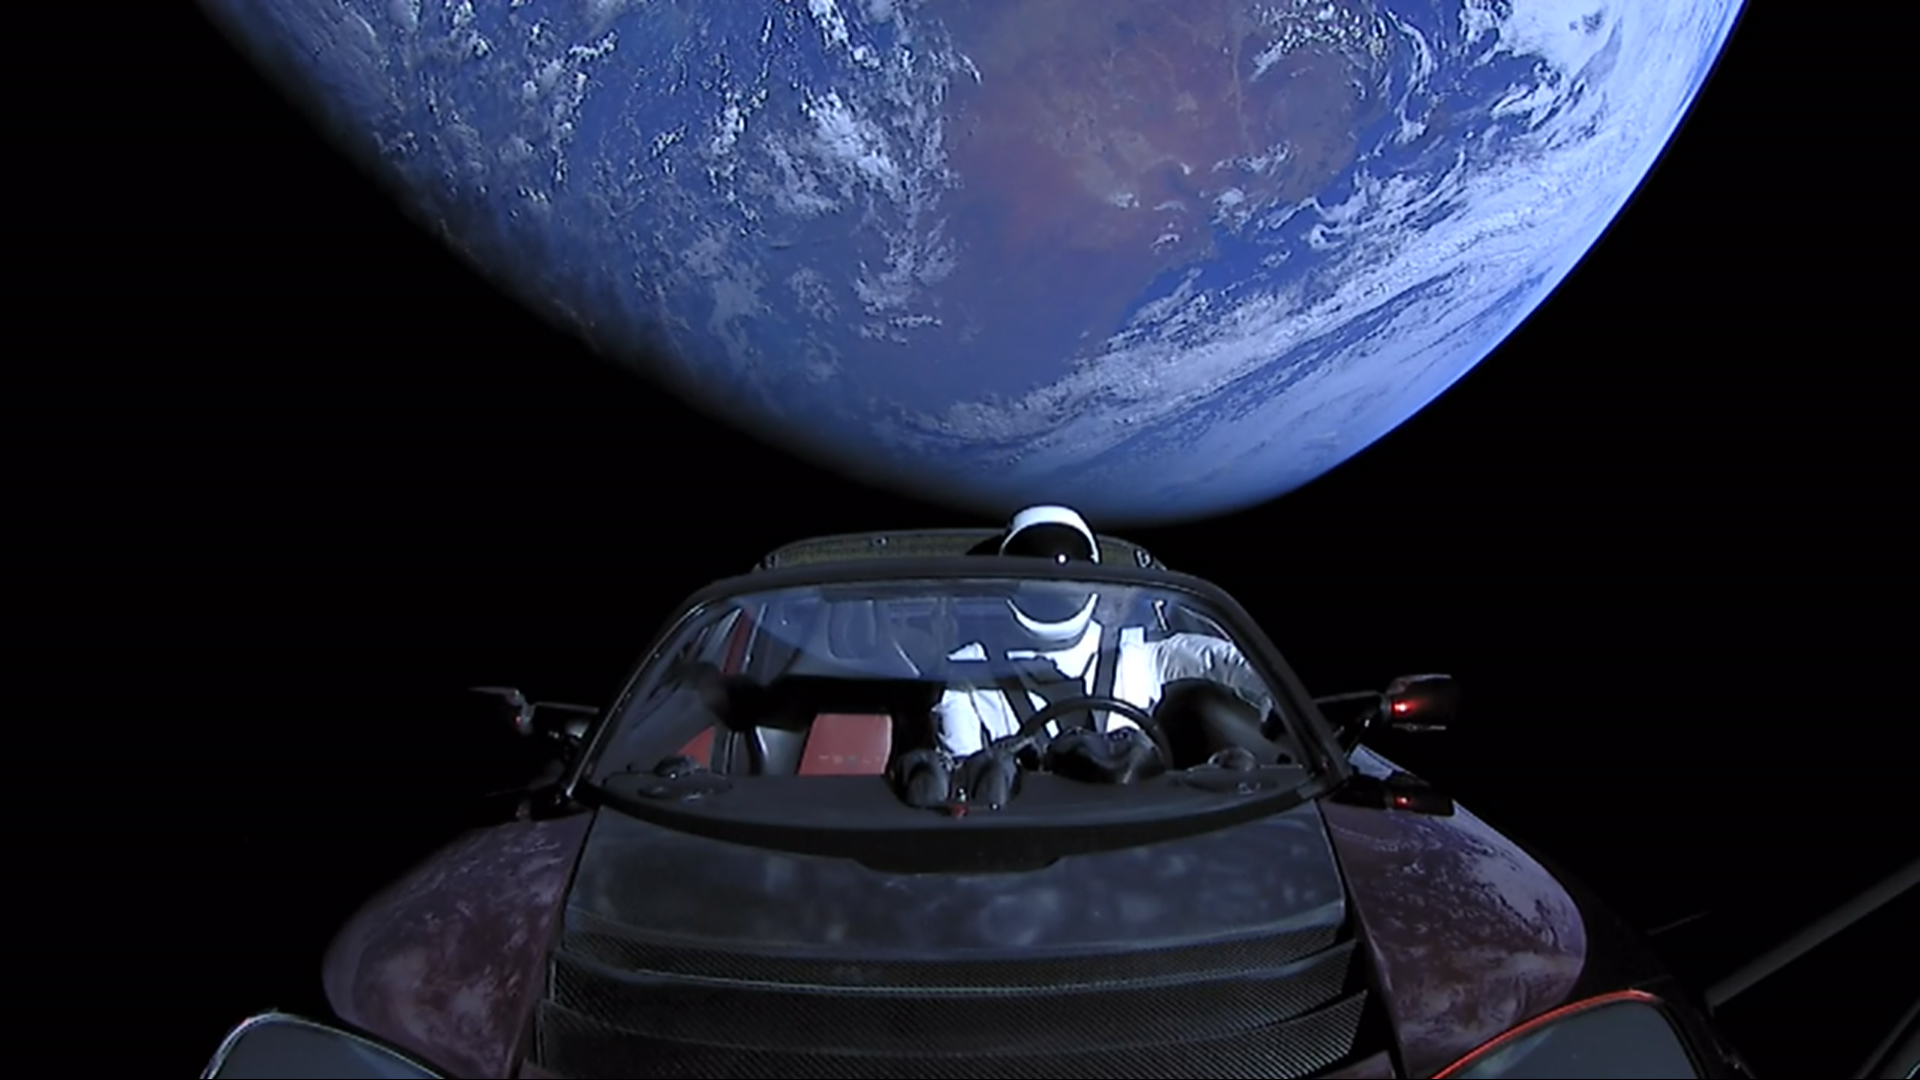 La Tesla Roadster vola nello spazio da 5 anni: ha percorso oltre 4 miliardi di chilometri, ha girato intorno al Sole 3,5 volte e ora è in orbita intorno a Marte.